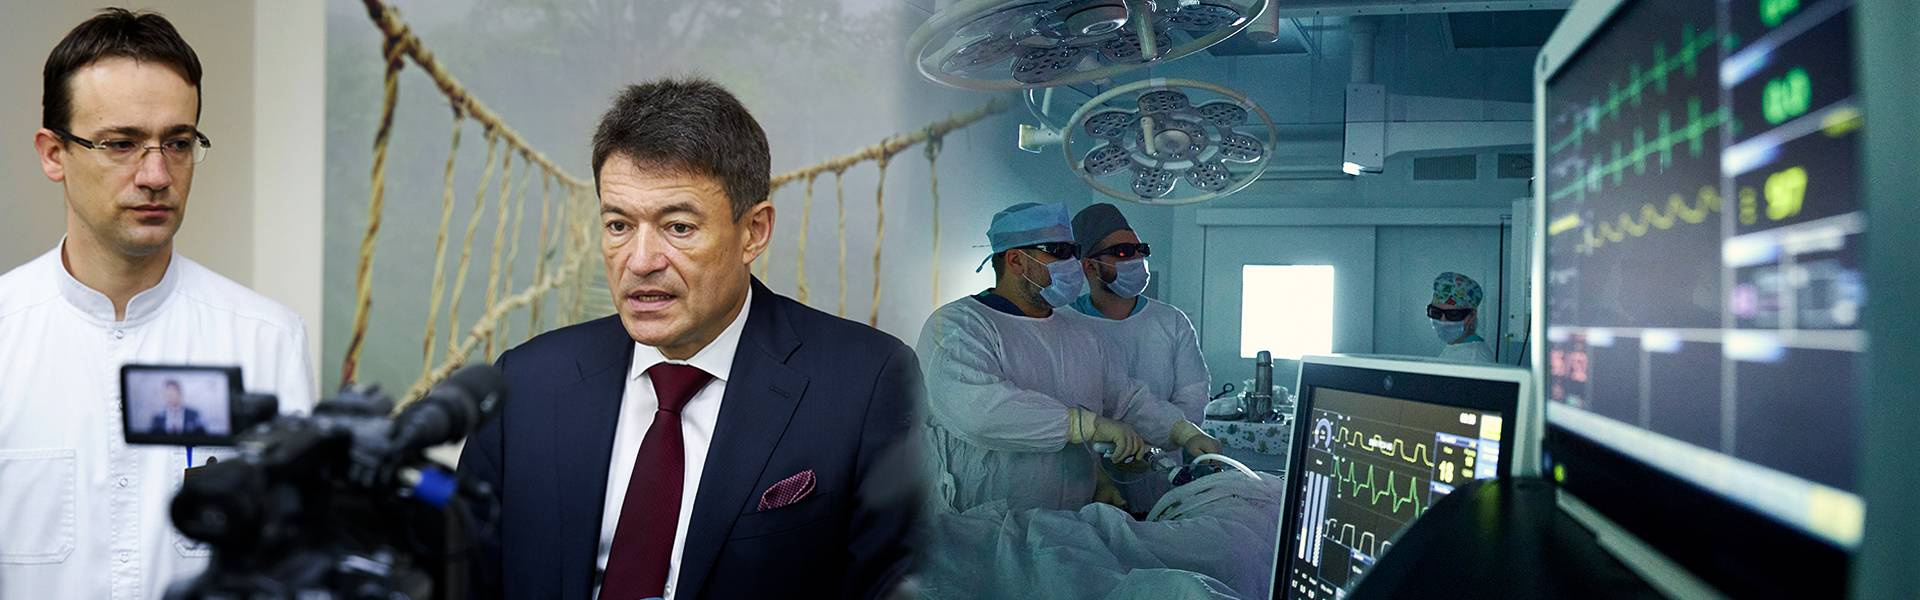 Курская онкологическая служба получила высокую оценку главного внештатного специалиста онколога Минздрава России